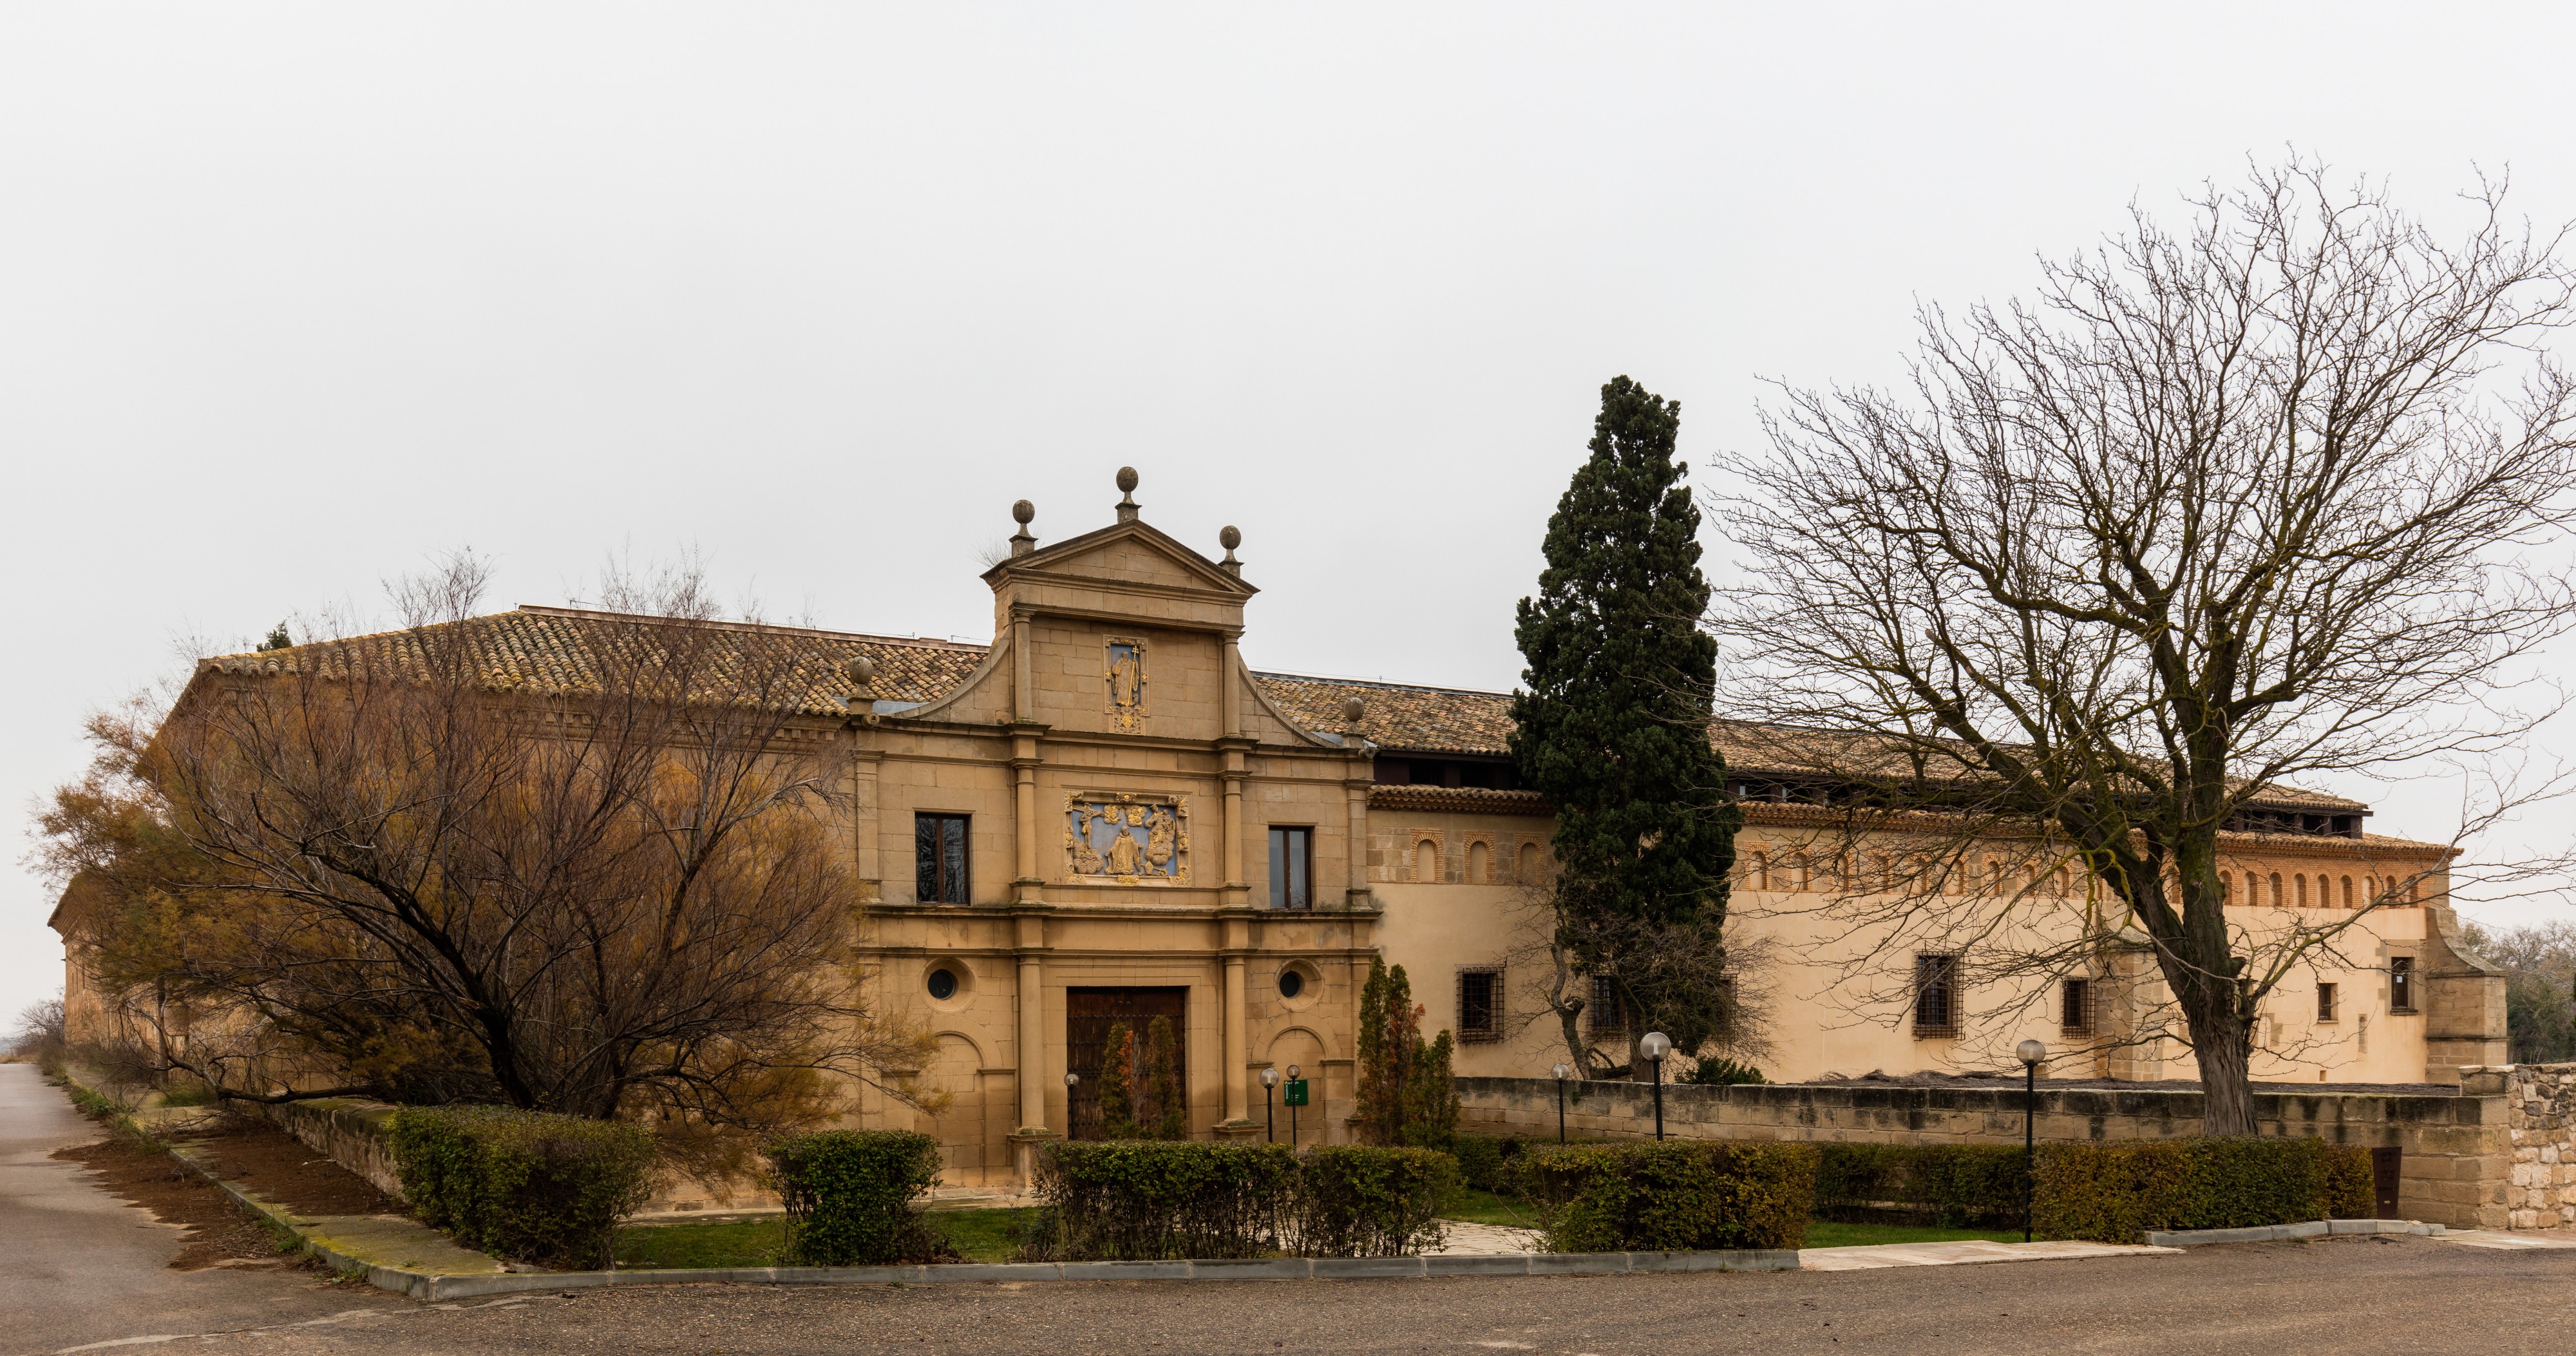 Monasterio de Nuestra Señora de Rueda, Sástago, Zaragoza, España, 2015-12-23, DD 30